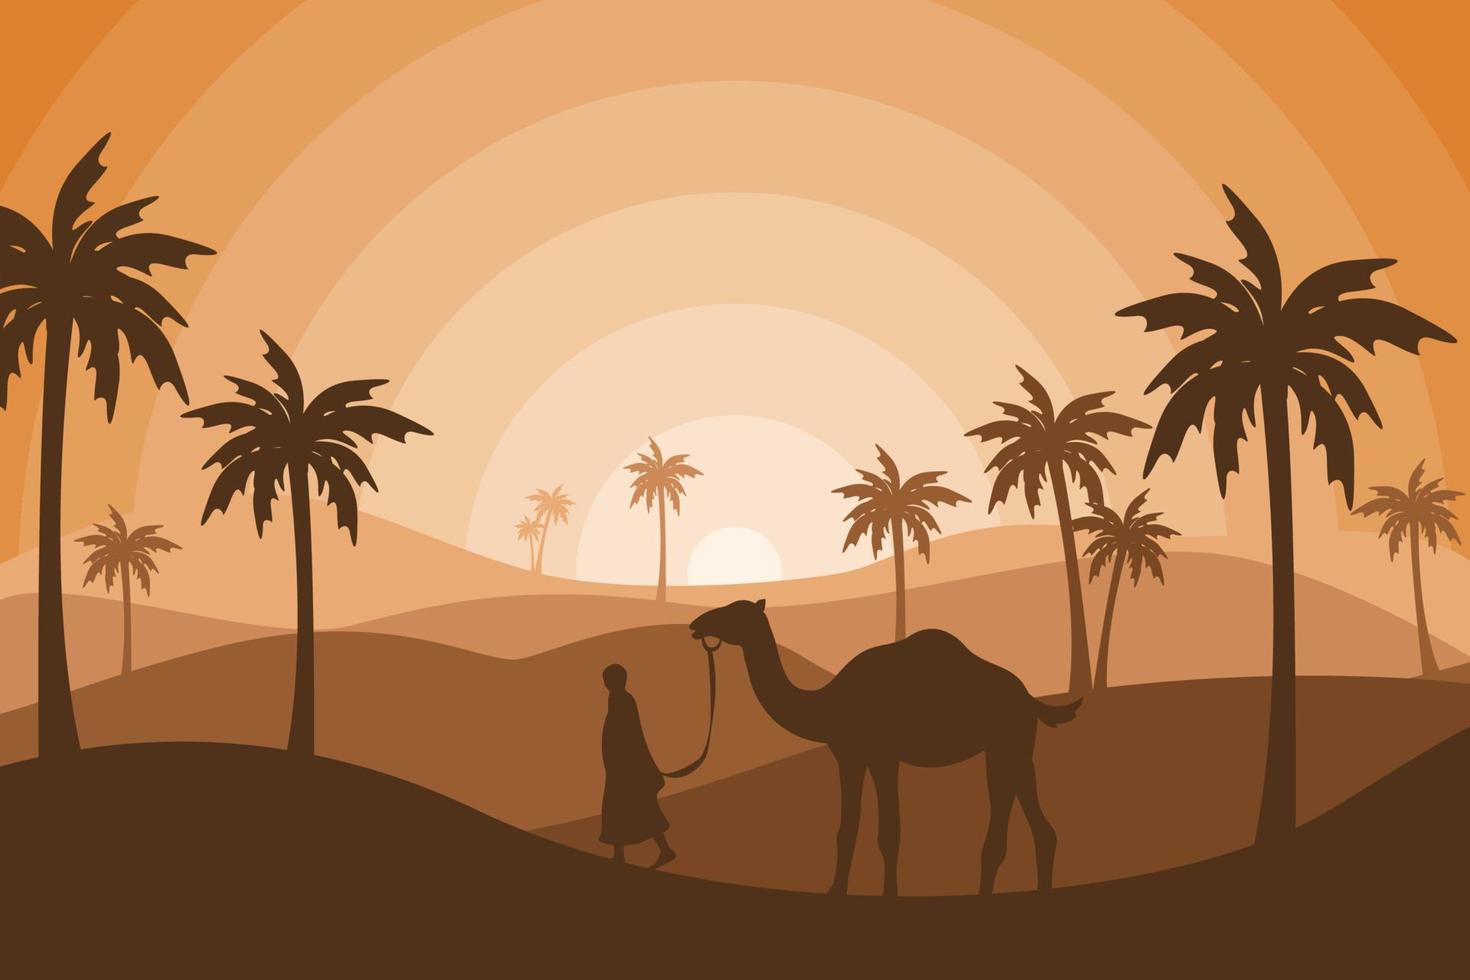 Kamel- und Menschenschattenbildhintergrundtapete, islamische flache Artillustration, Eid al Adha-Feiertag, schöne Sonnenlichtlandschaft, Palme, Sandwüste, Vektorgrafik vektor